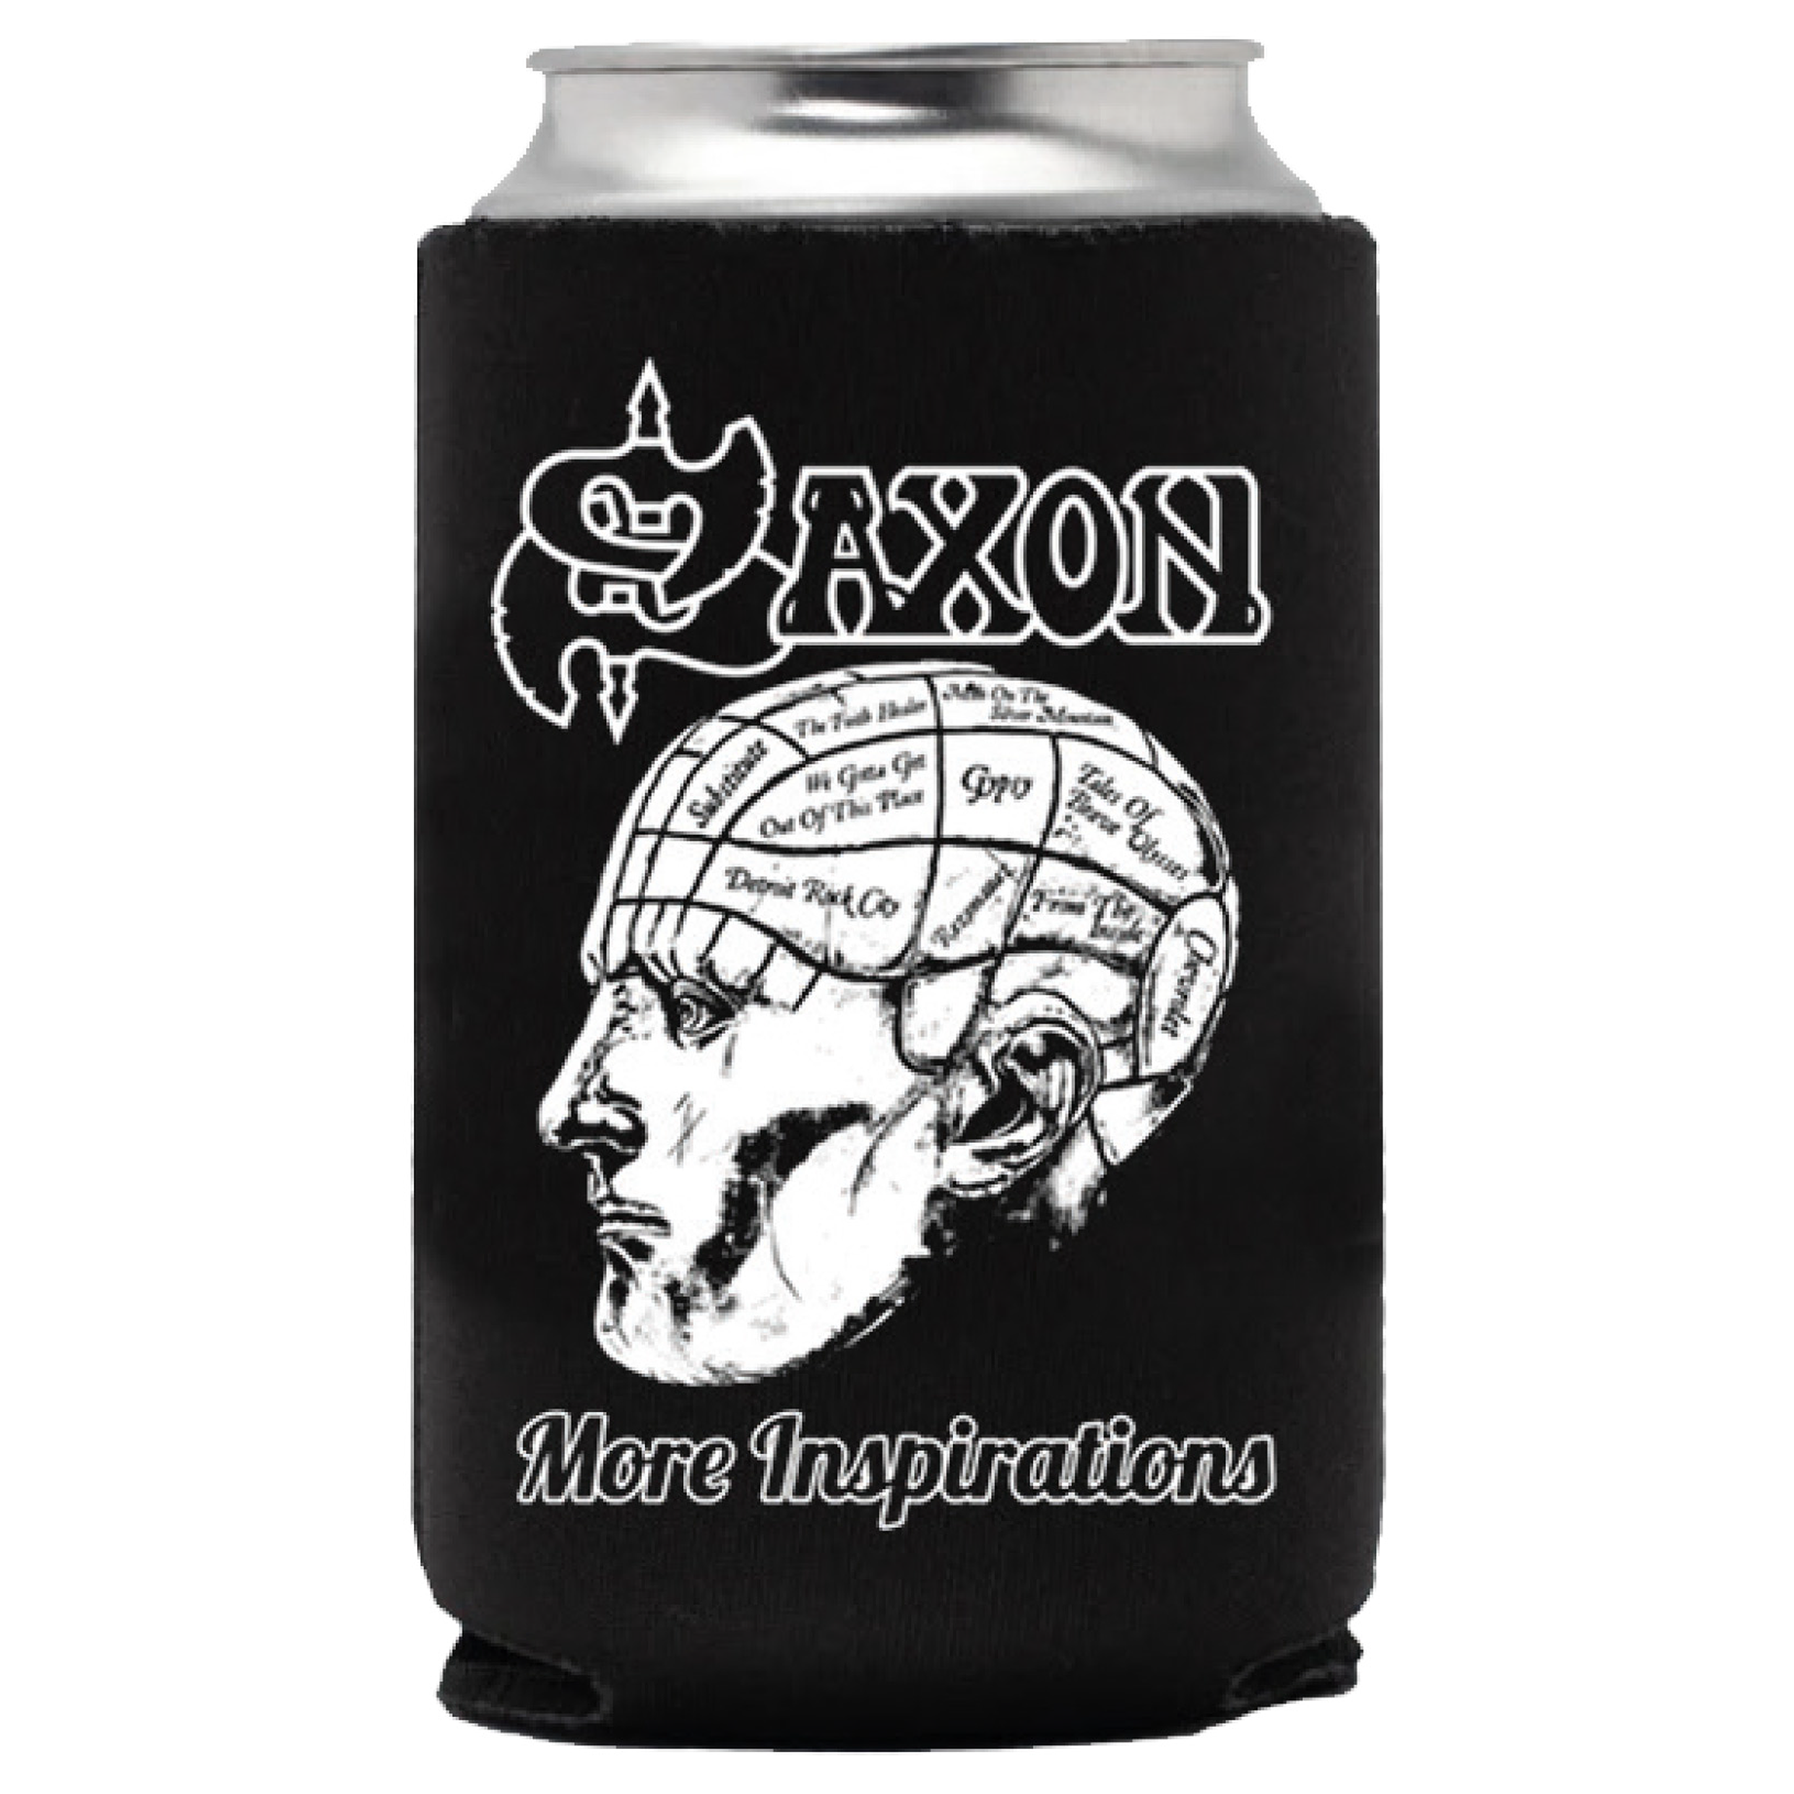 Saxon “More Inspirations" Koozie